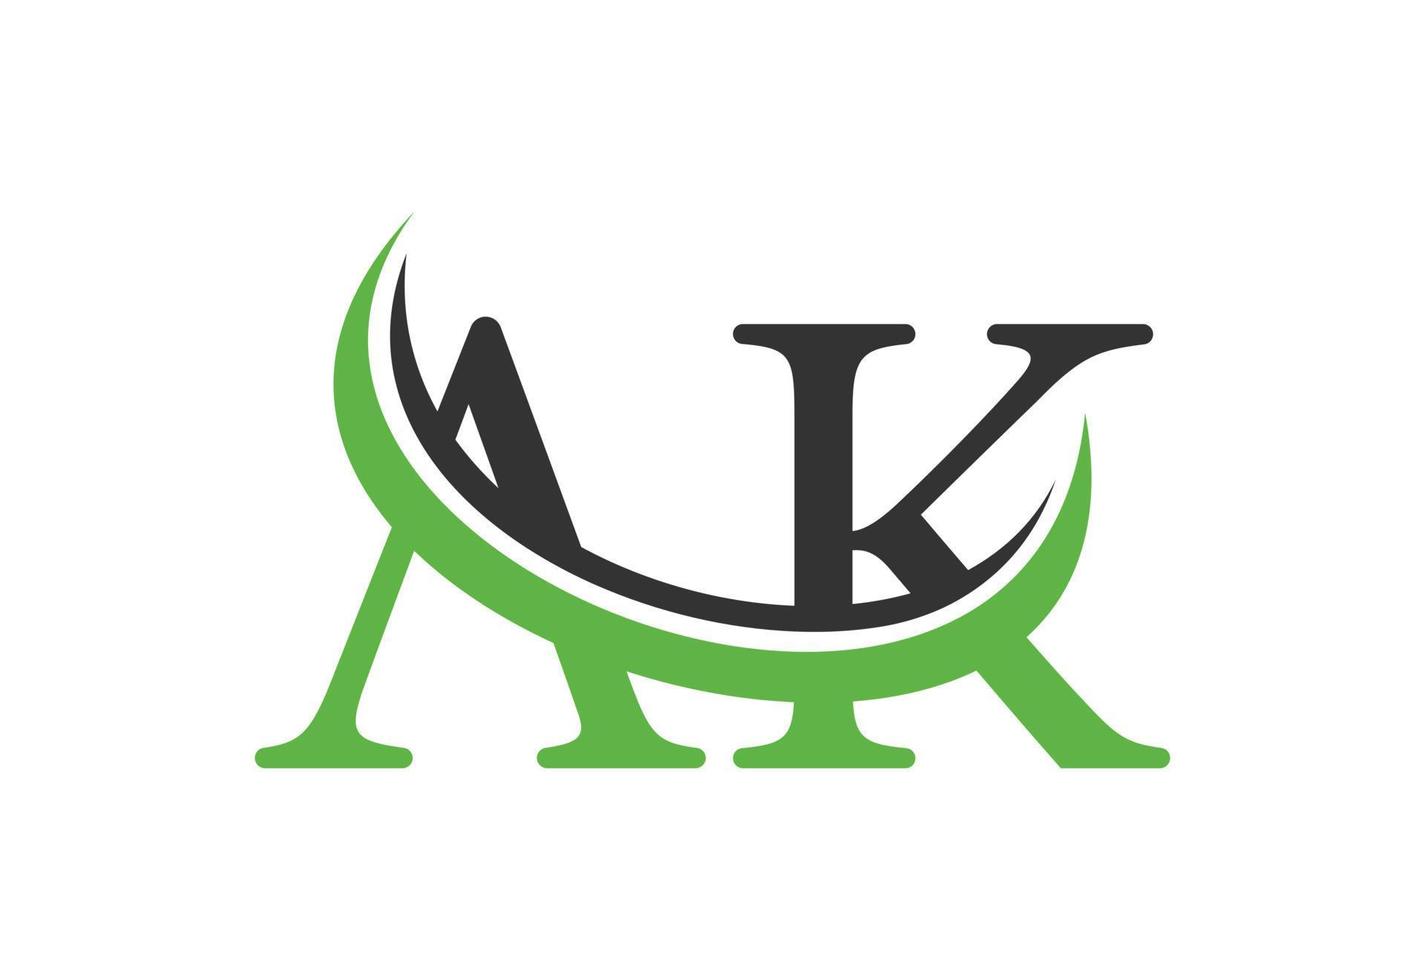 inicial ak carta logotipo projeto, vetor Projeto conceito